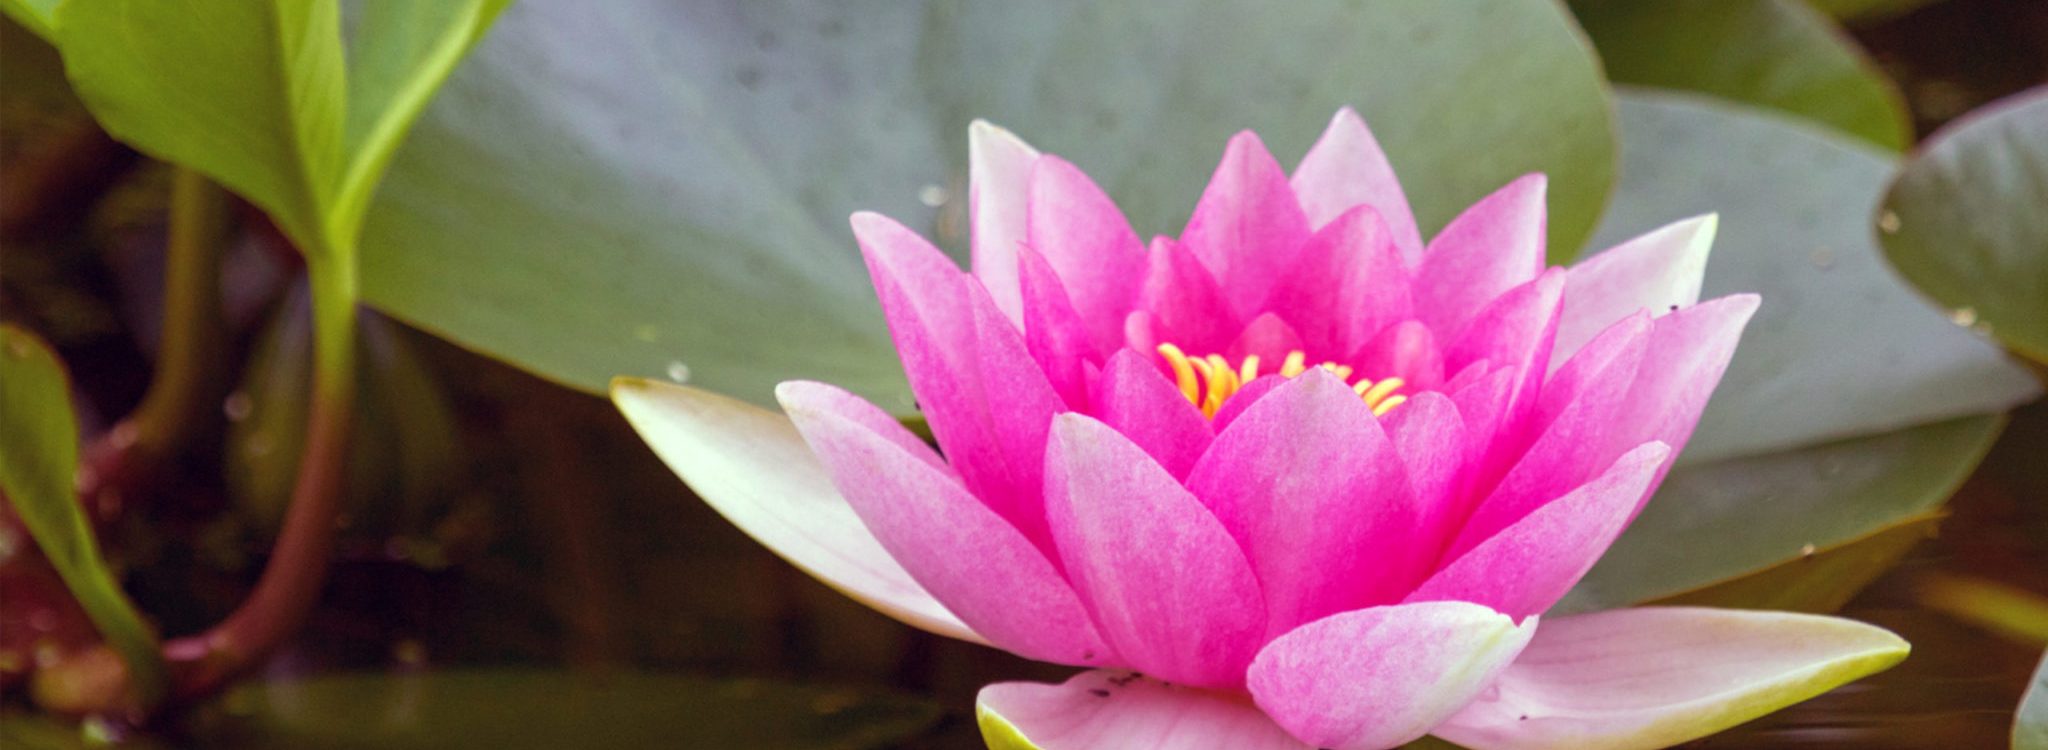 Lotus slider image